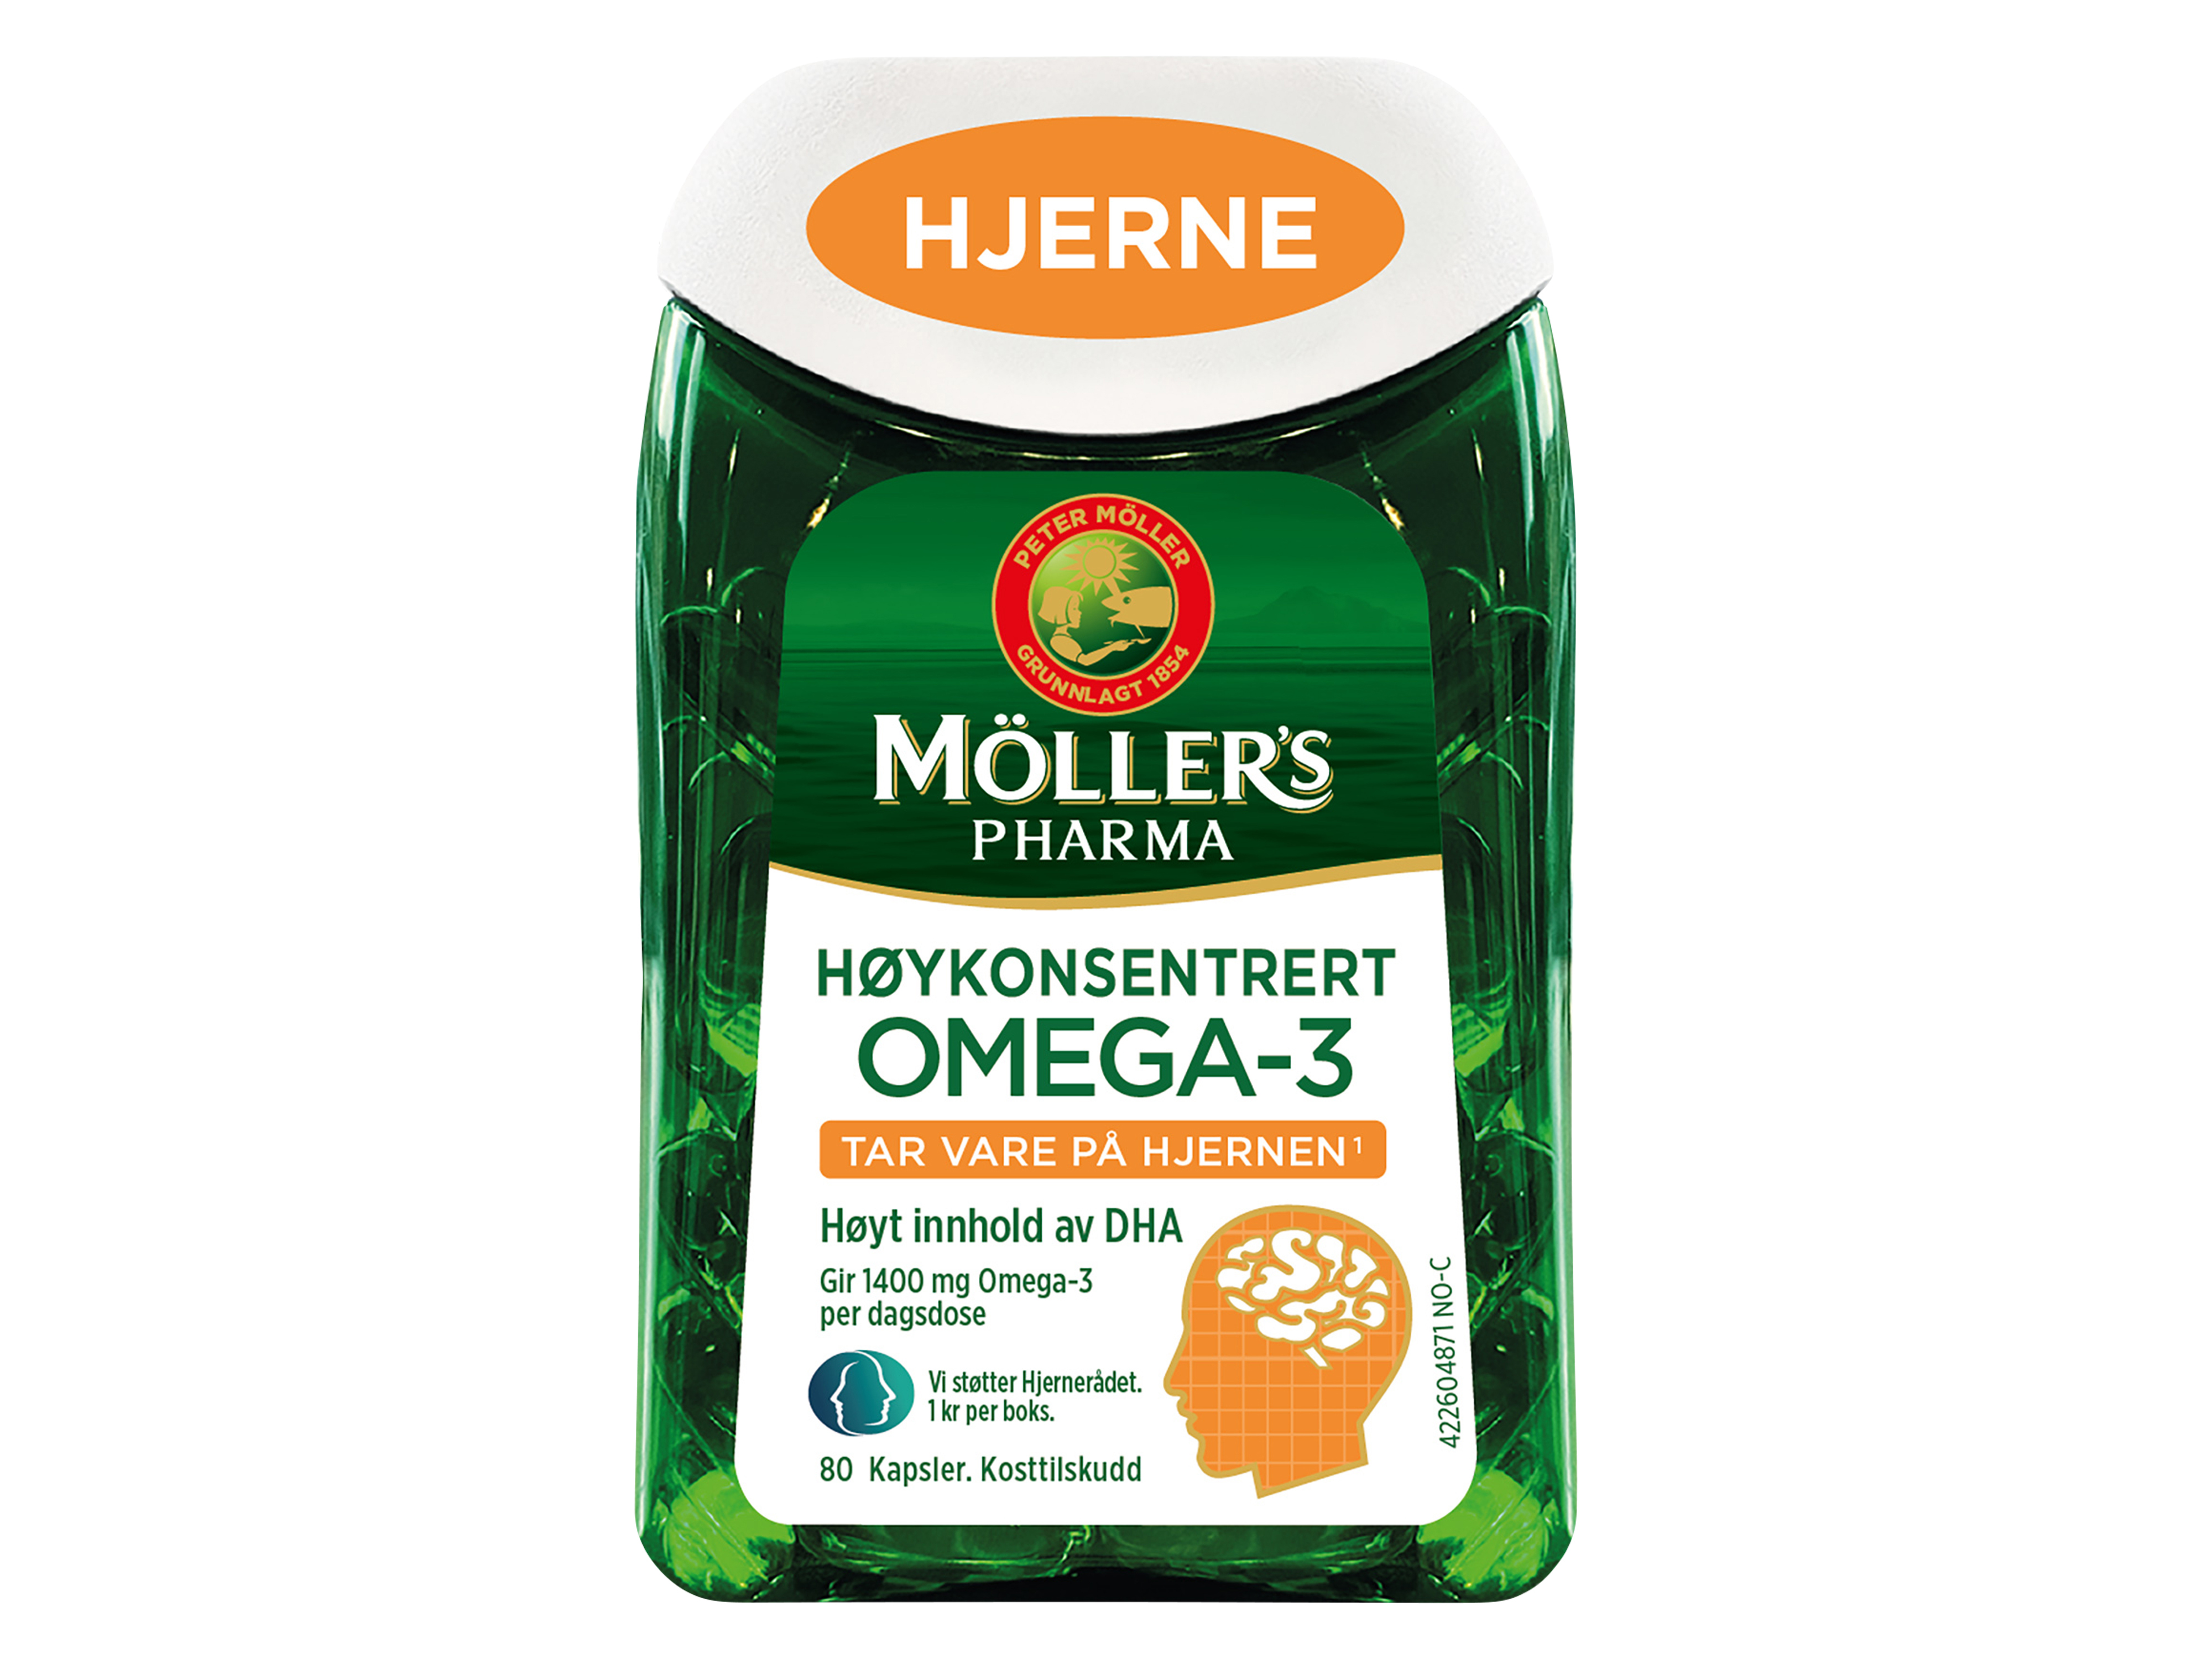 Möller's Pharma Omega-3 Hjerne, 80 kapsler